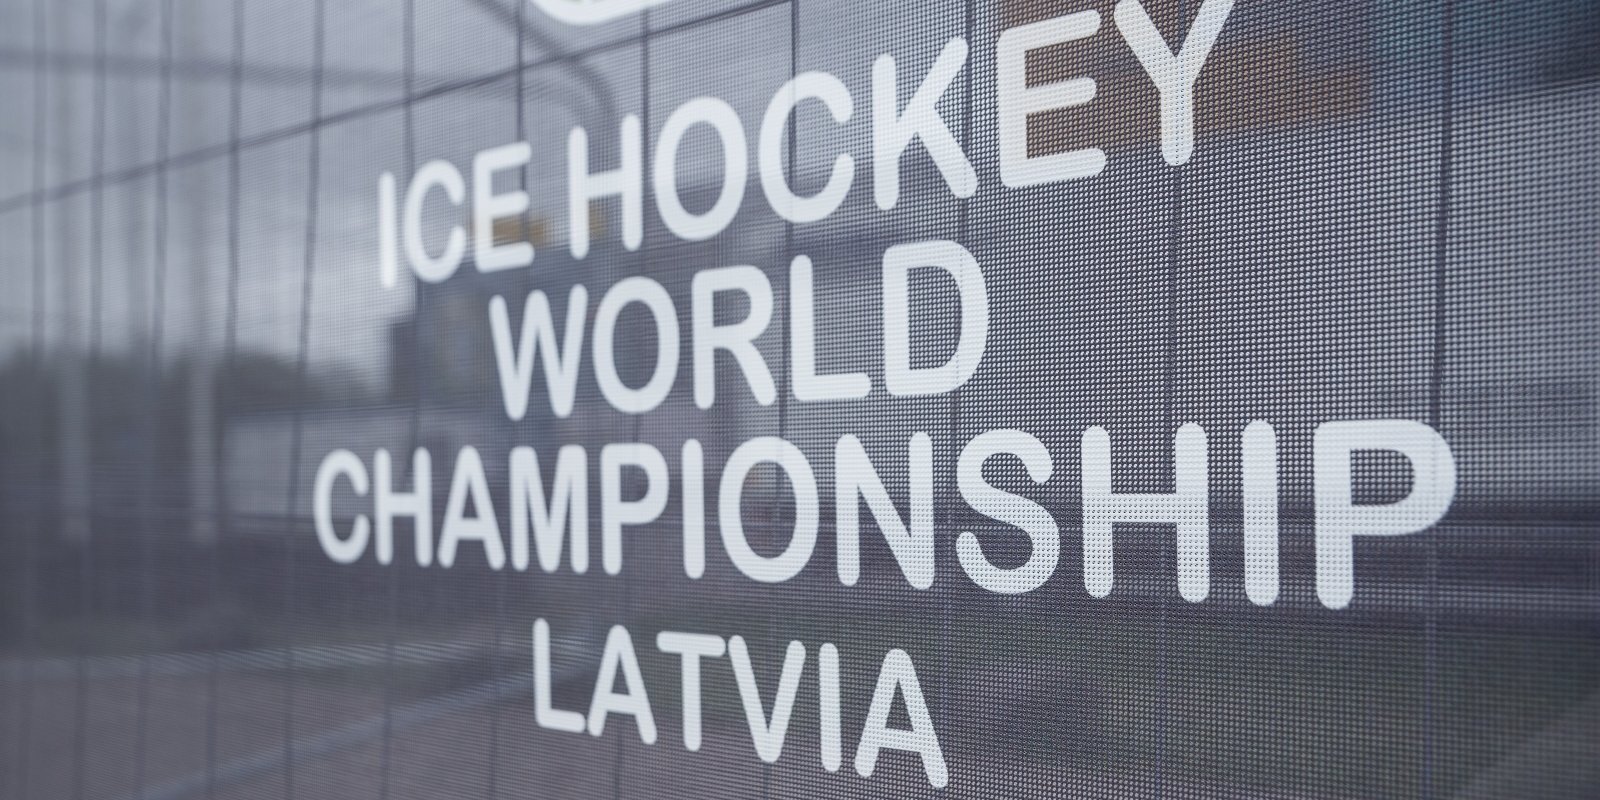 Kurš maksās? Kāpēc Latvija atkal raujas rīkot lielo hokeju un kā tas beidzās iepriekšējoreiz